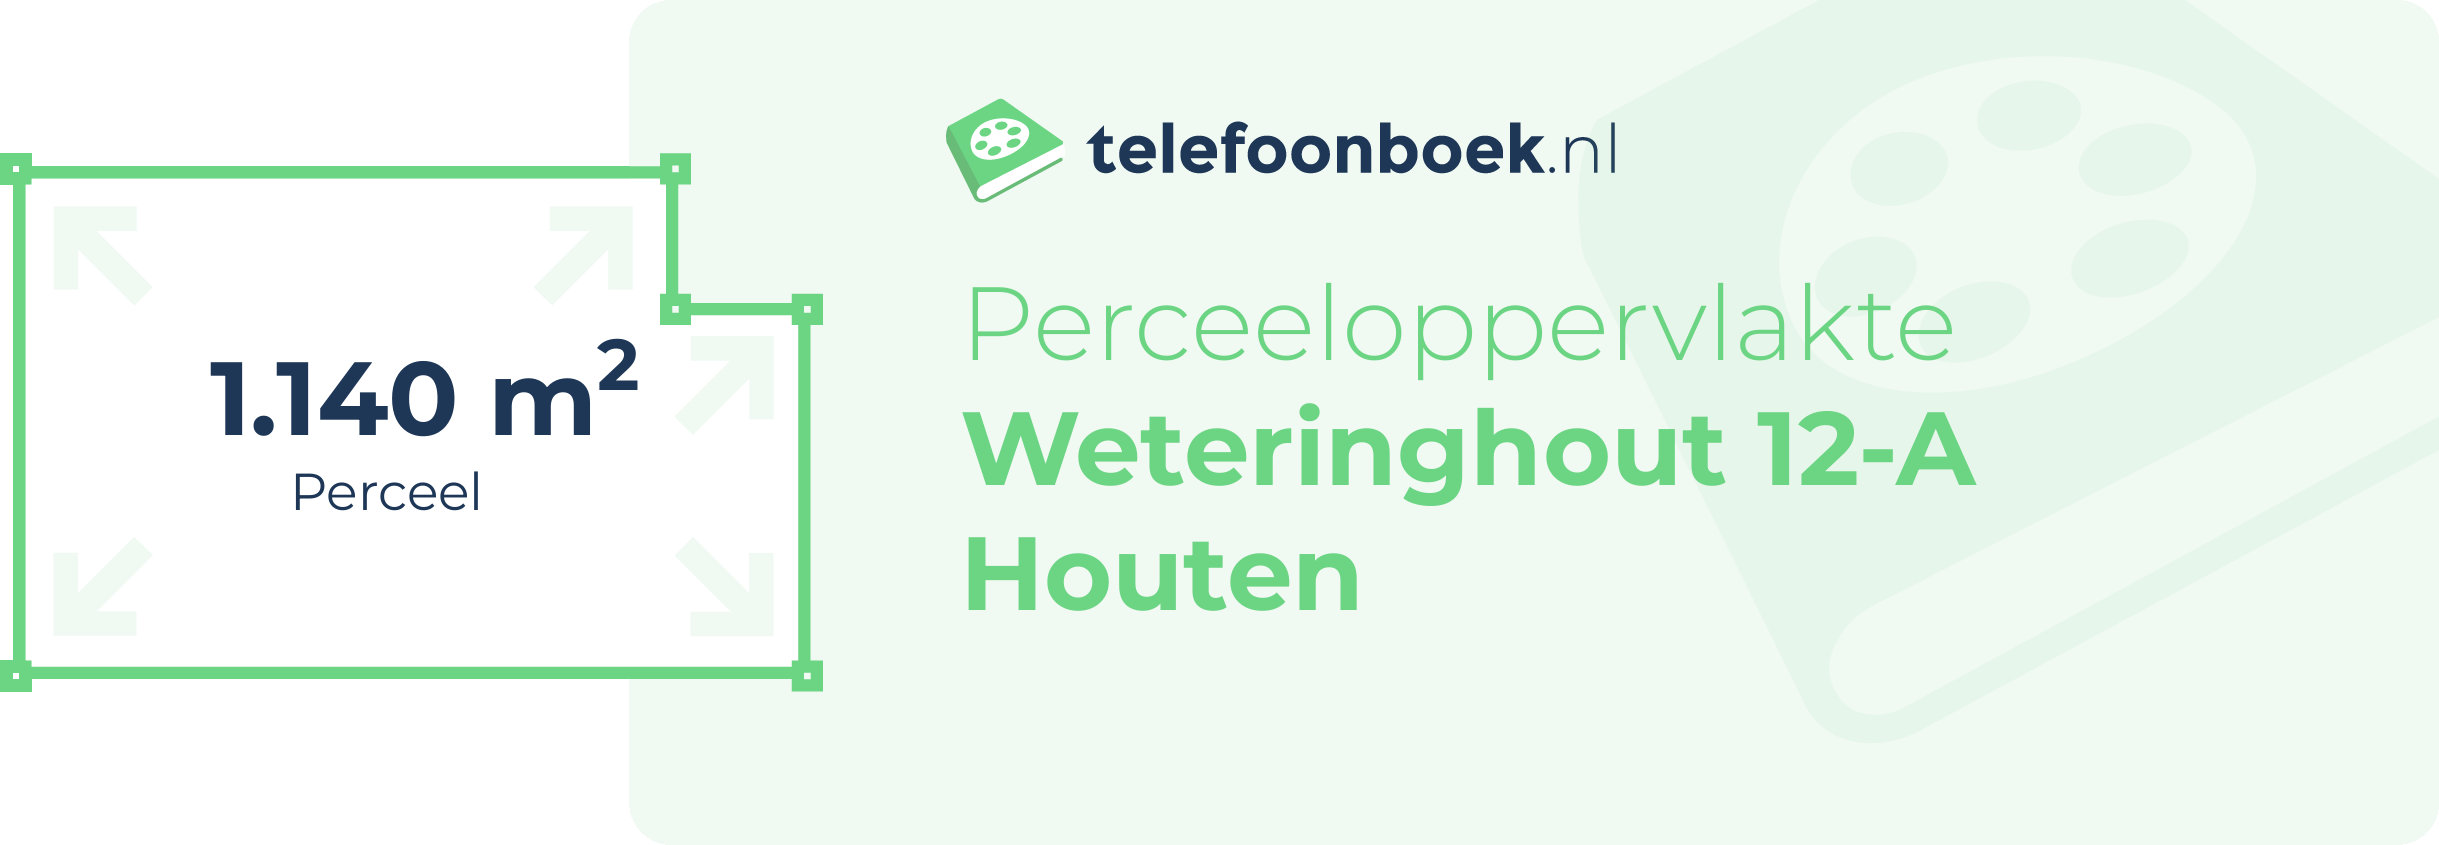 Perceeloppervlakte Weteringhout 12-A Houten